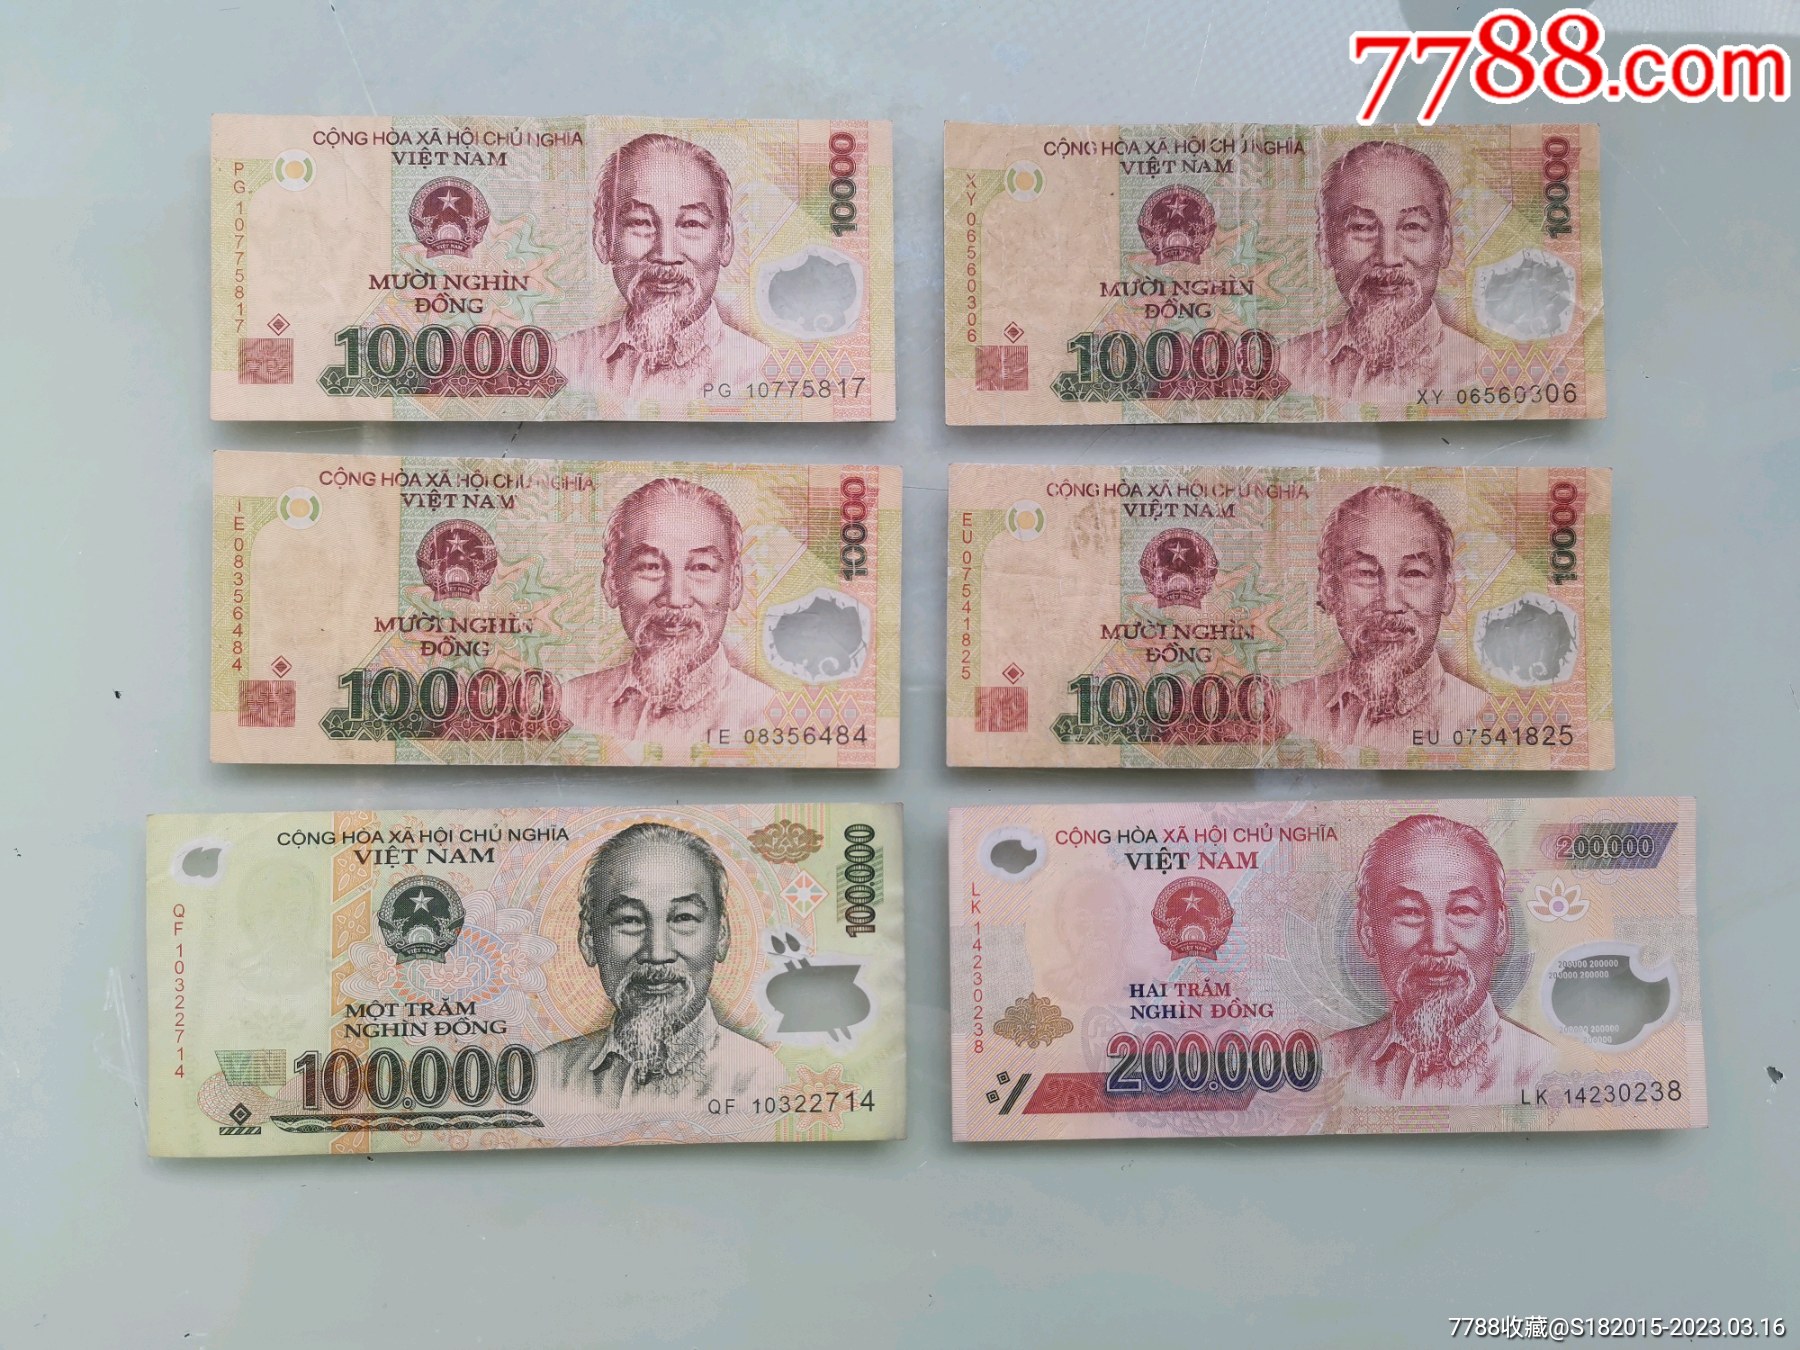 当前汇率0000303,5000 越南盾 = 15150 人民币越南盾可以换算人民币